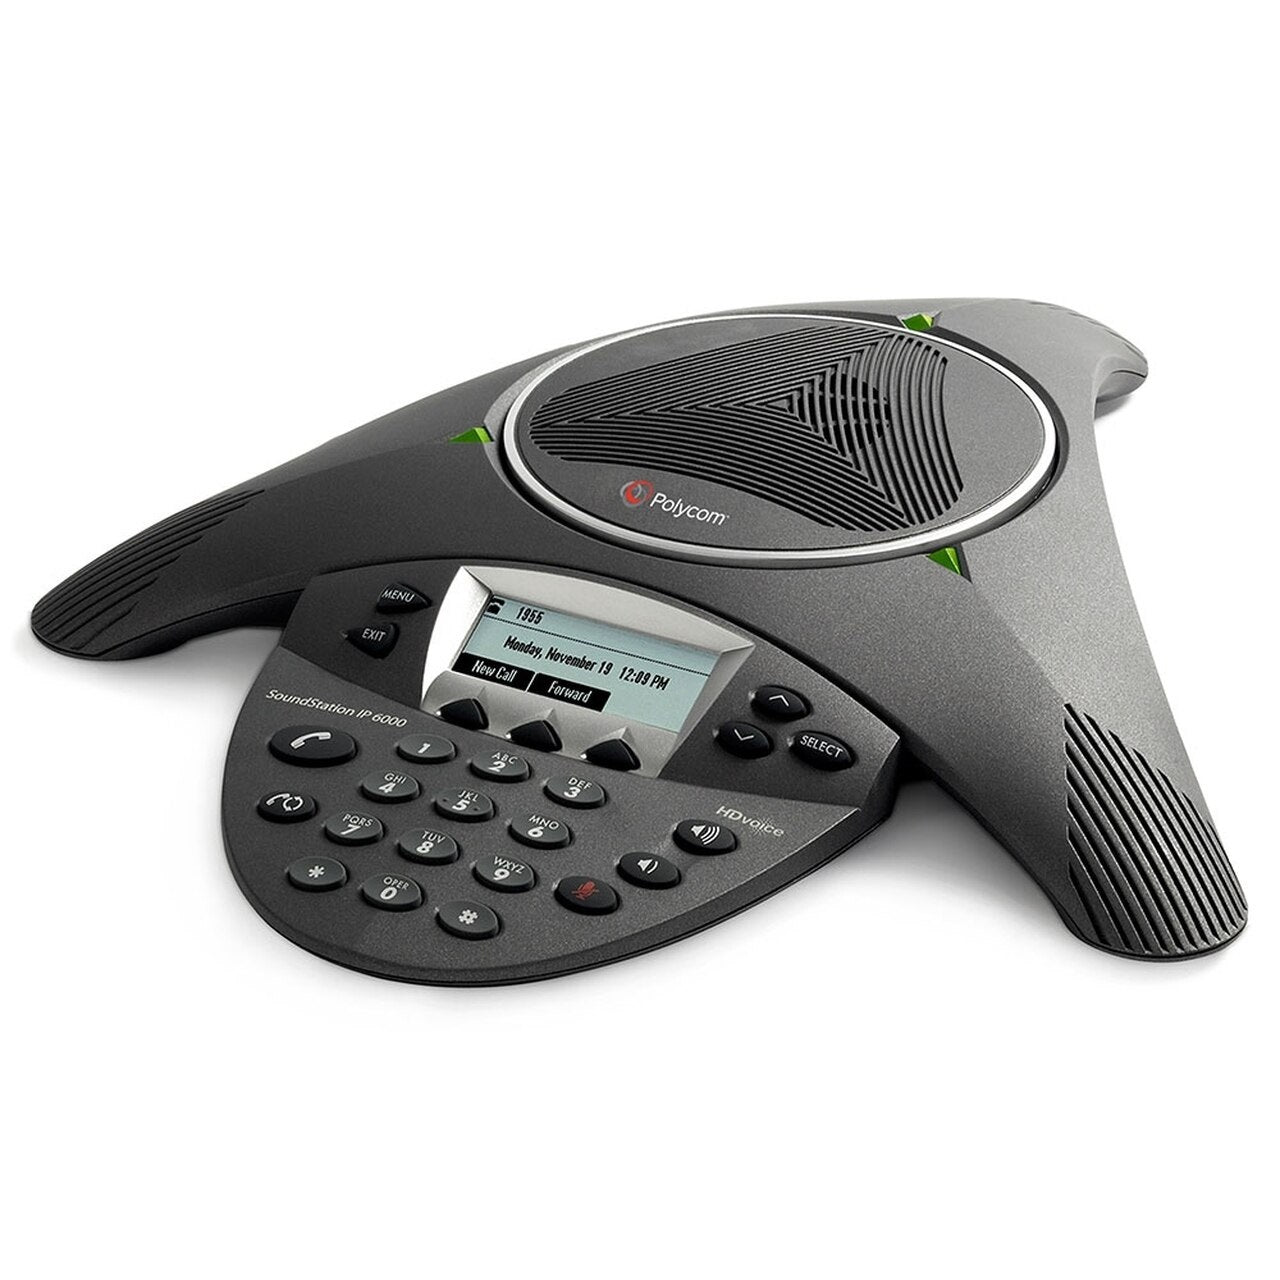 polycom-soundstation-ip-6000-conference-phone-2200-15600-001-side